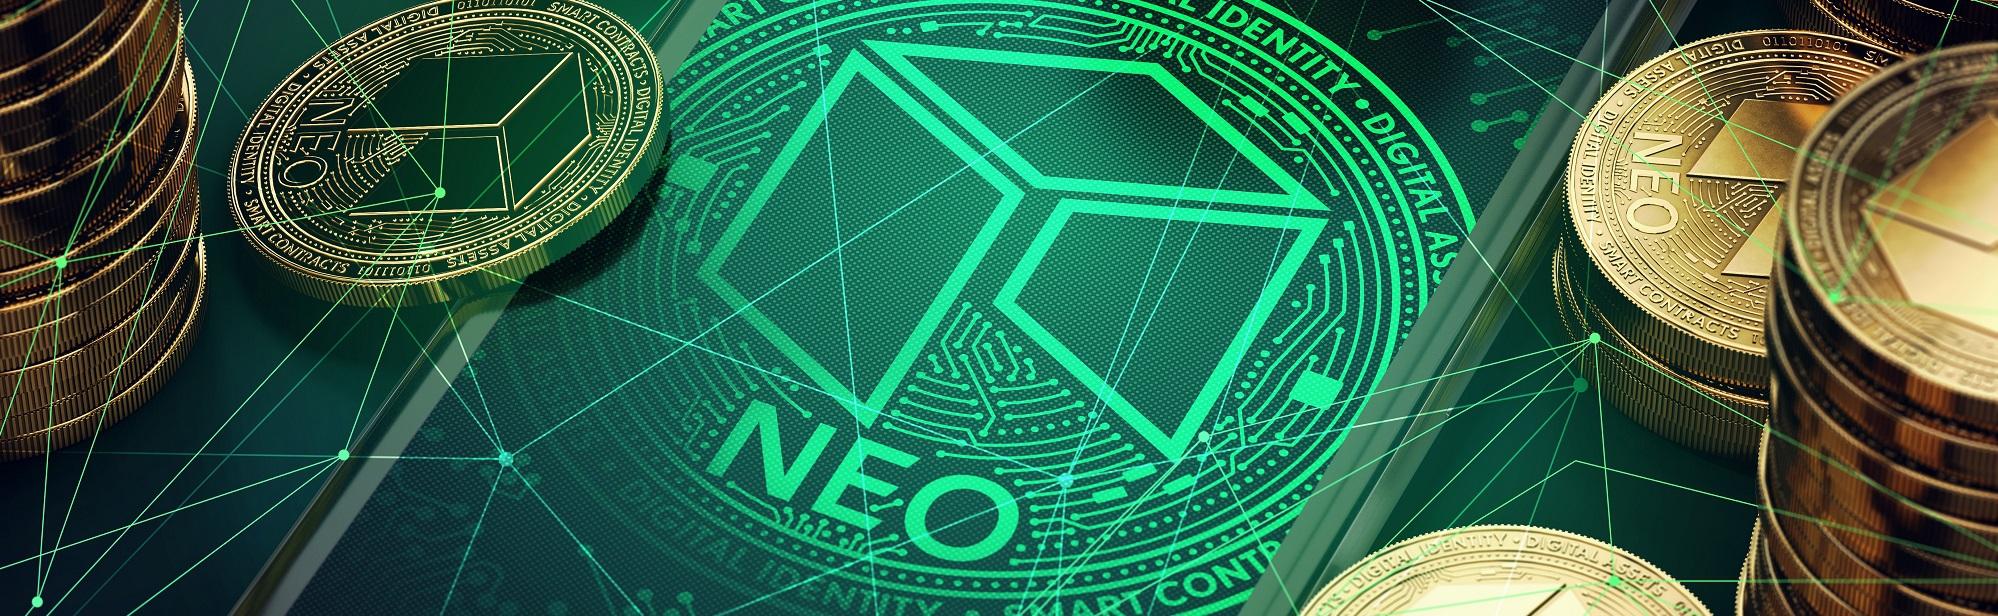 NEO – что это такое и как работает? Обзор криптовалюты